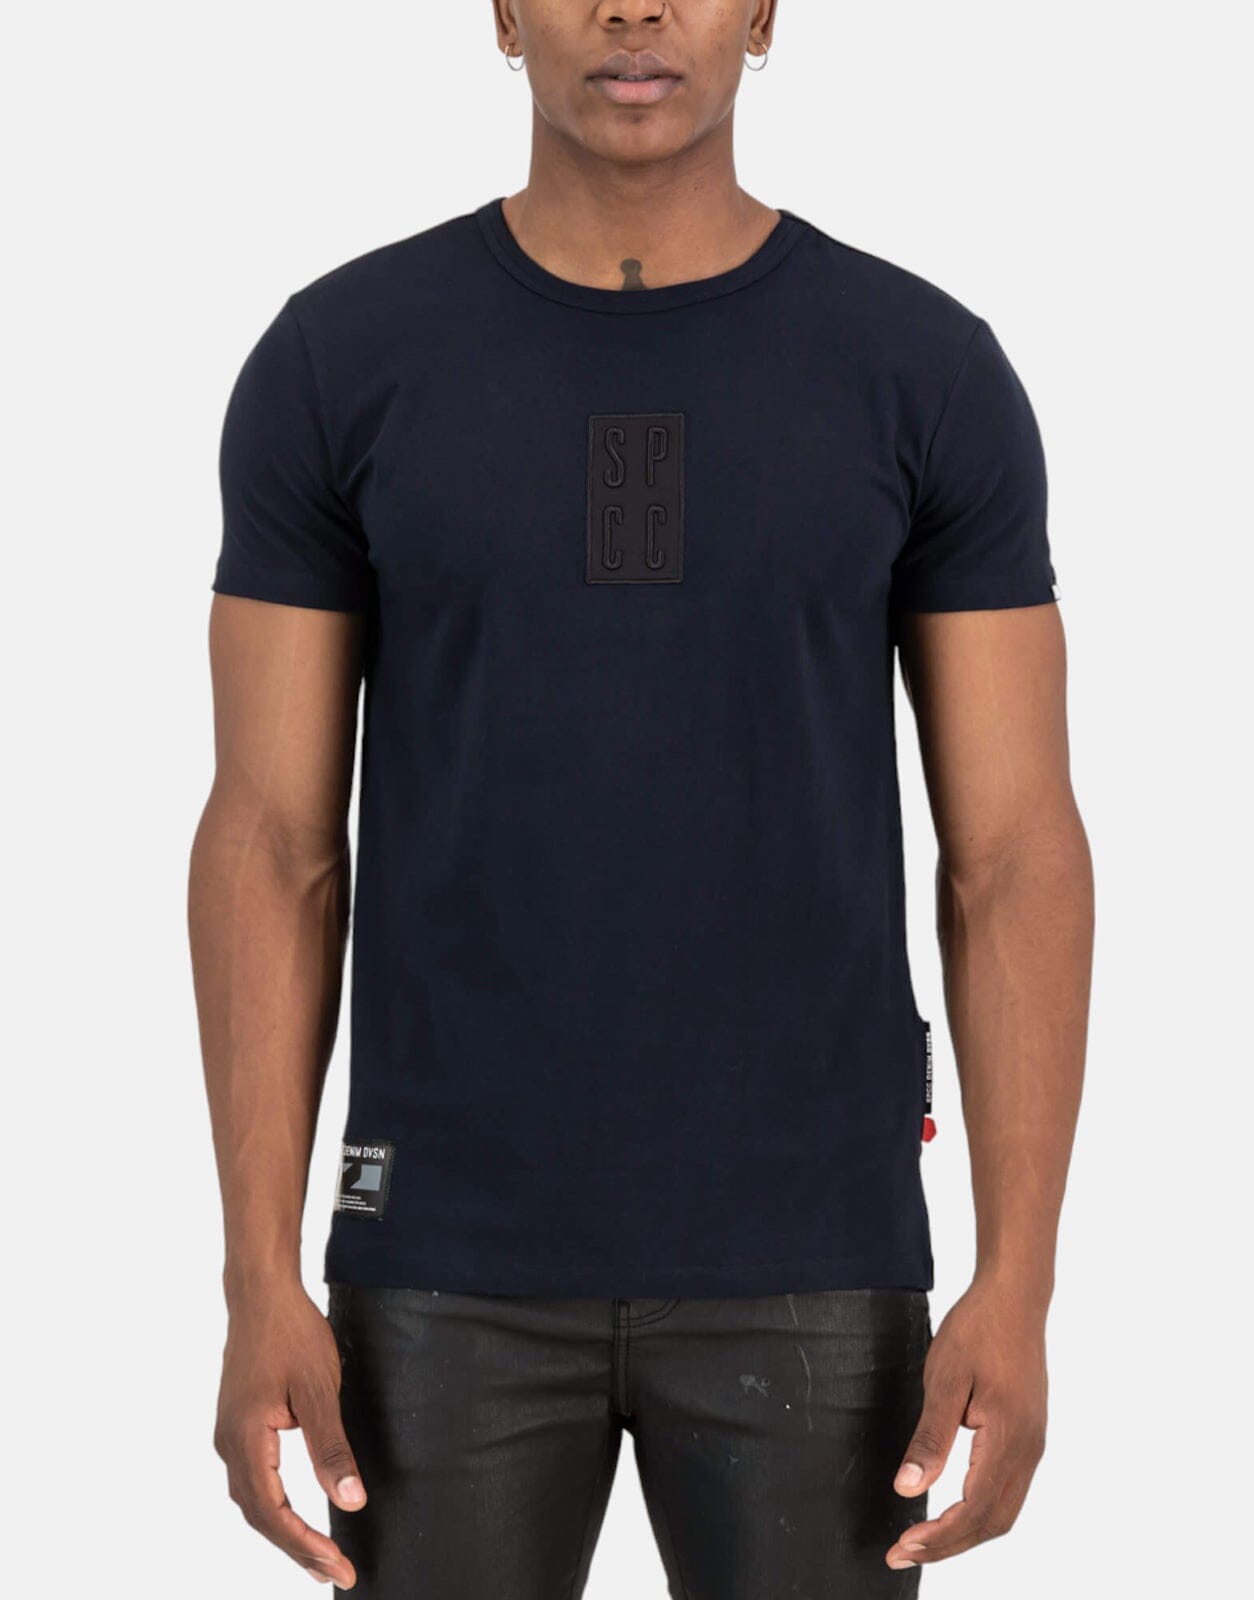 SPCC Hockley Navy T-Shirt - Subwear